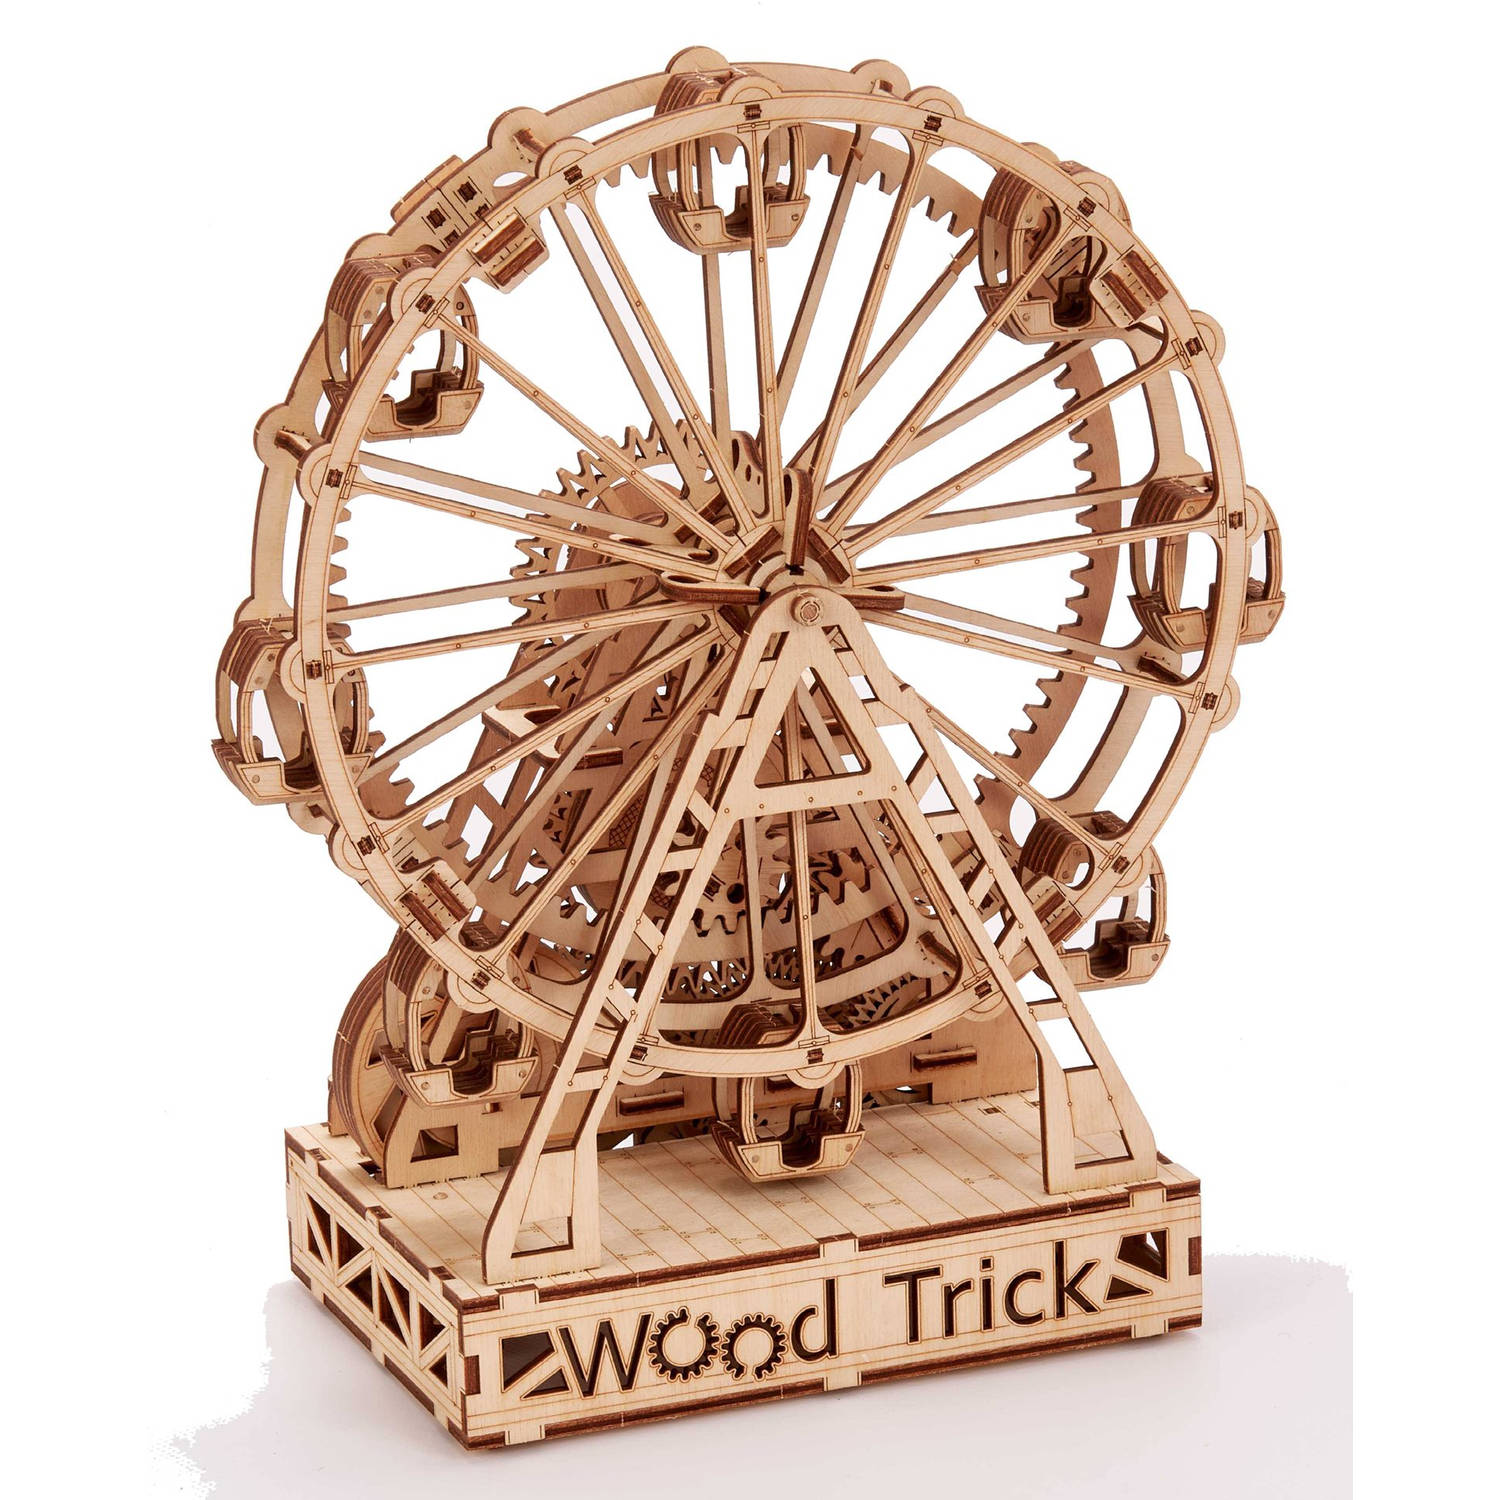 WoodTrick – Modelbouw 3D houten puzzel – ‘Ferries wheel’ / Reuzenrad (WDTK043) – 301 stuks - Geen lijm noch verf nodig!